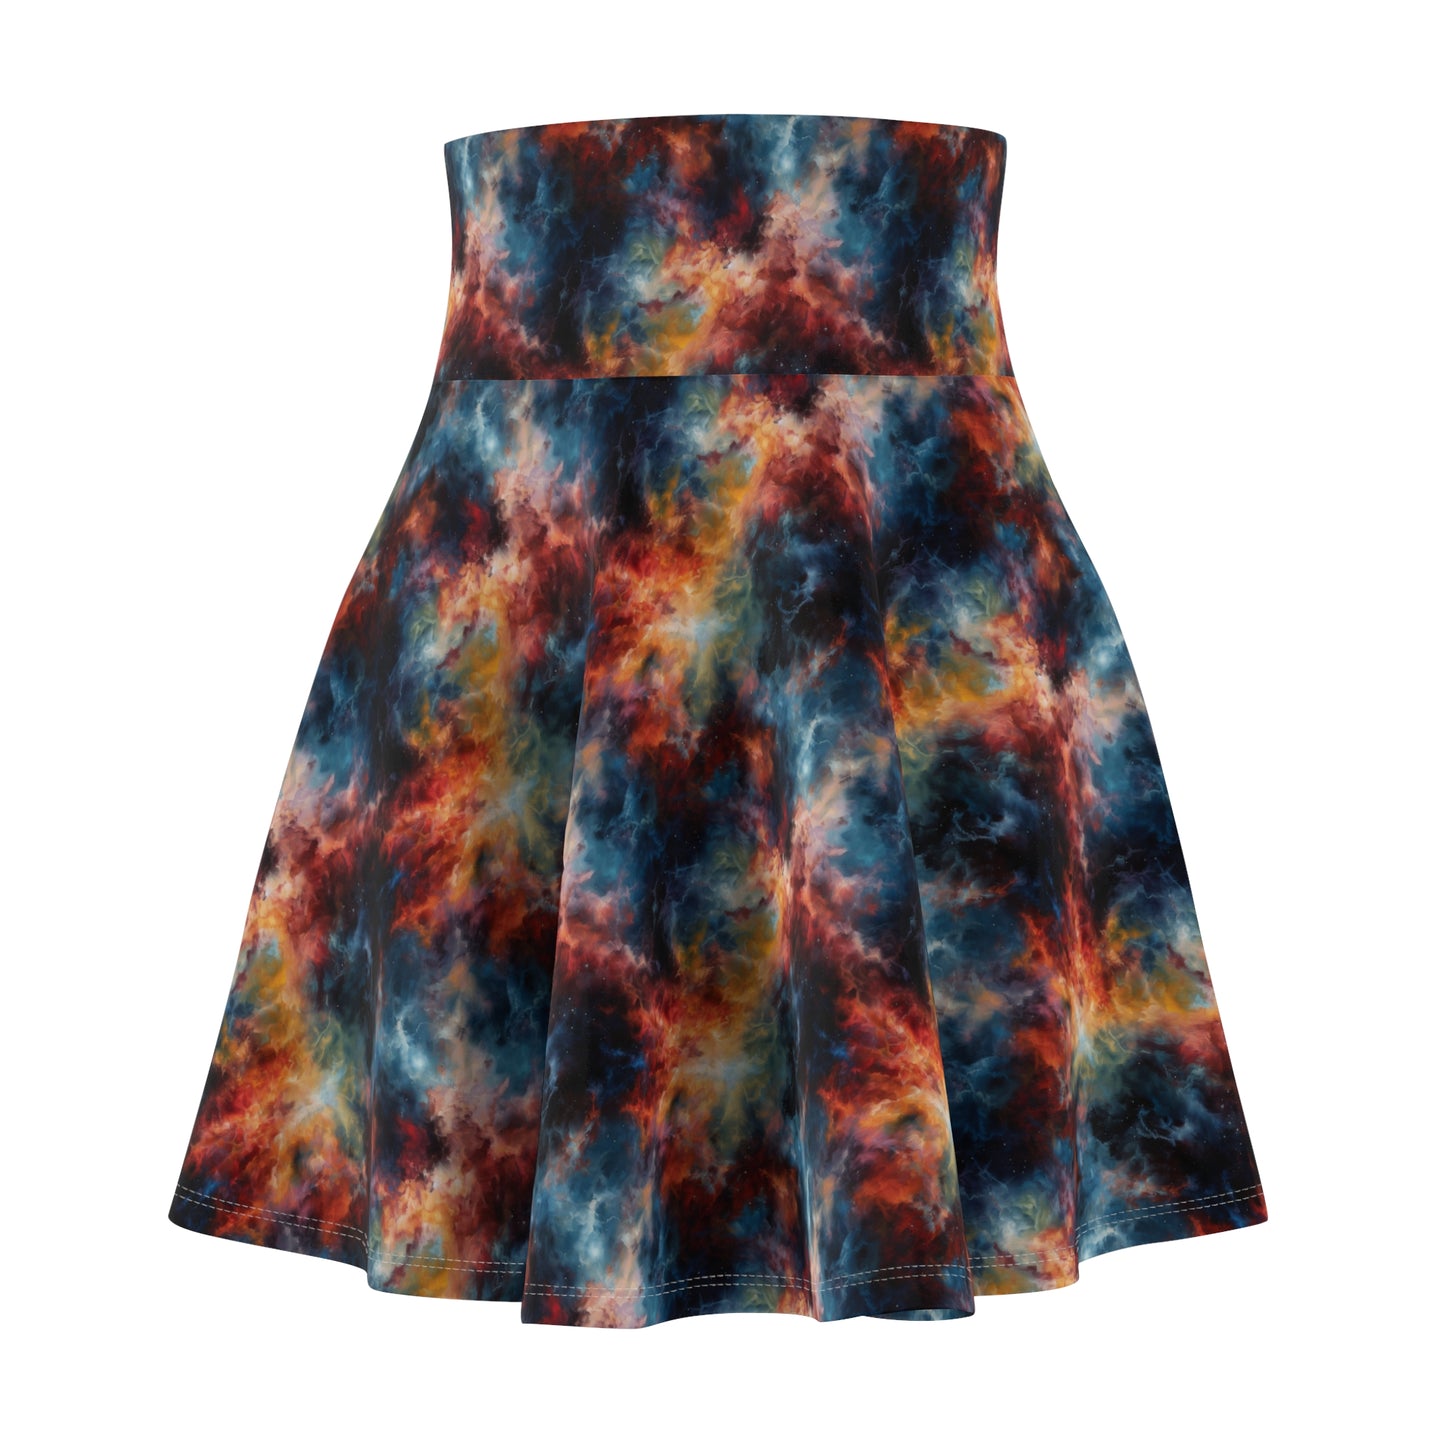 Galaxy / Nebula Skirt | Witchy Skirt | Magical Skirt | Universe